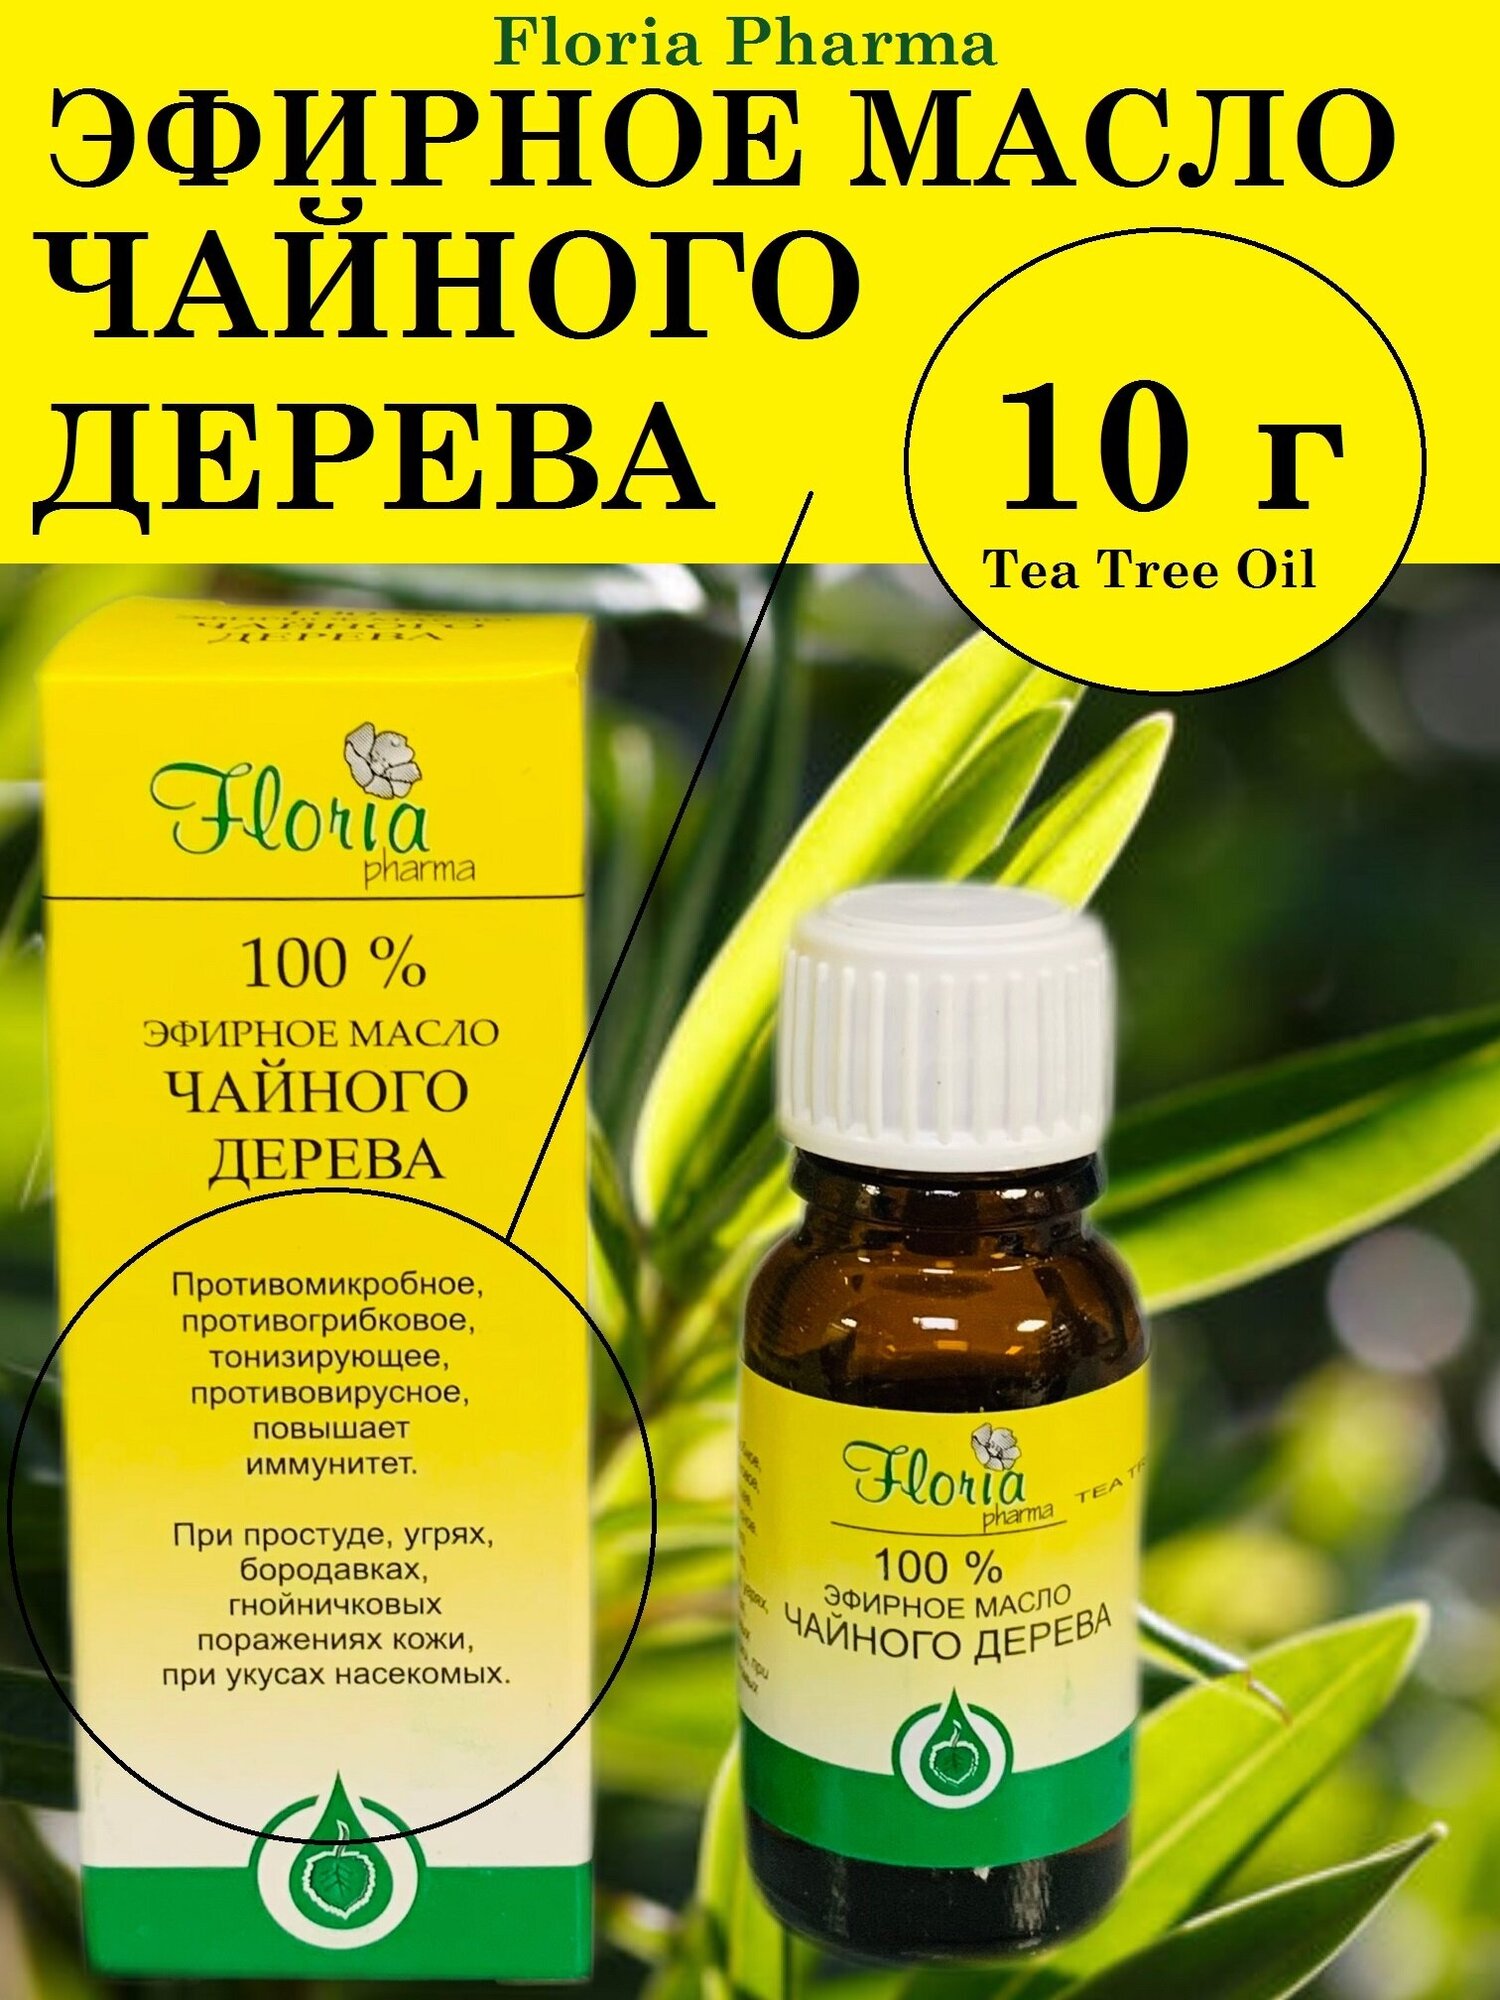 Чайного дерева эфирное масло 10 г